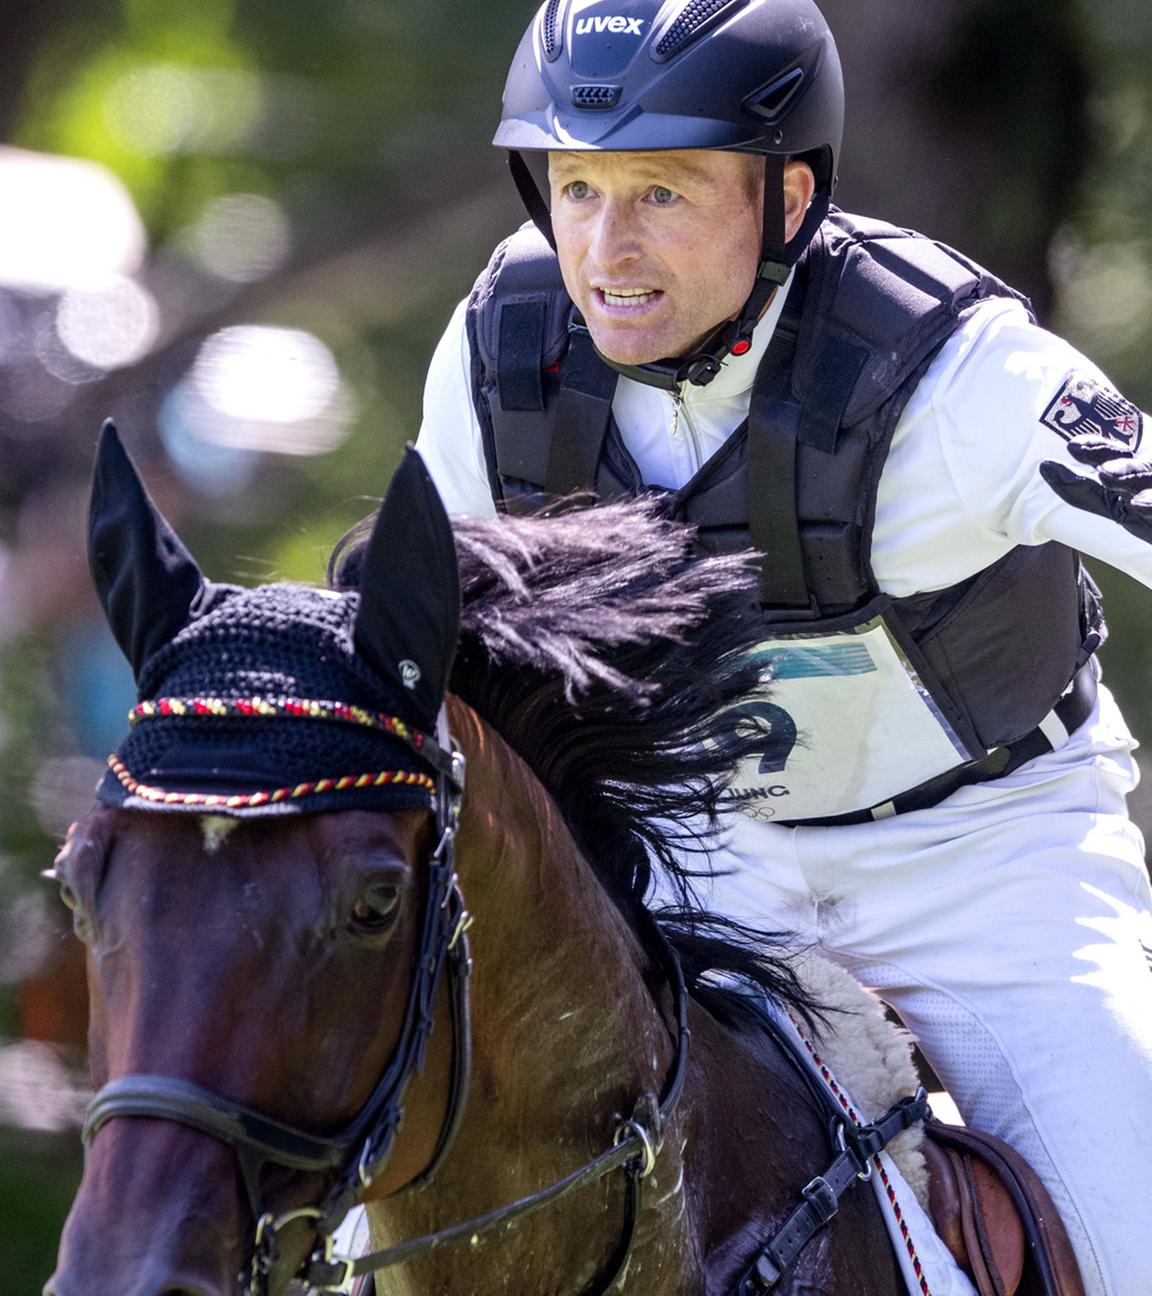 Der deutsche Reiter Michael Jung mit seinem Pferd Chipmunk FRH nimmt an der Vielseitigkeitsprüfung teil.